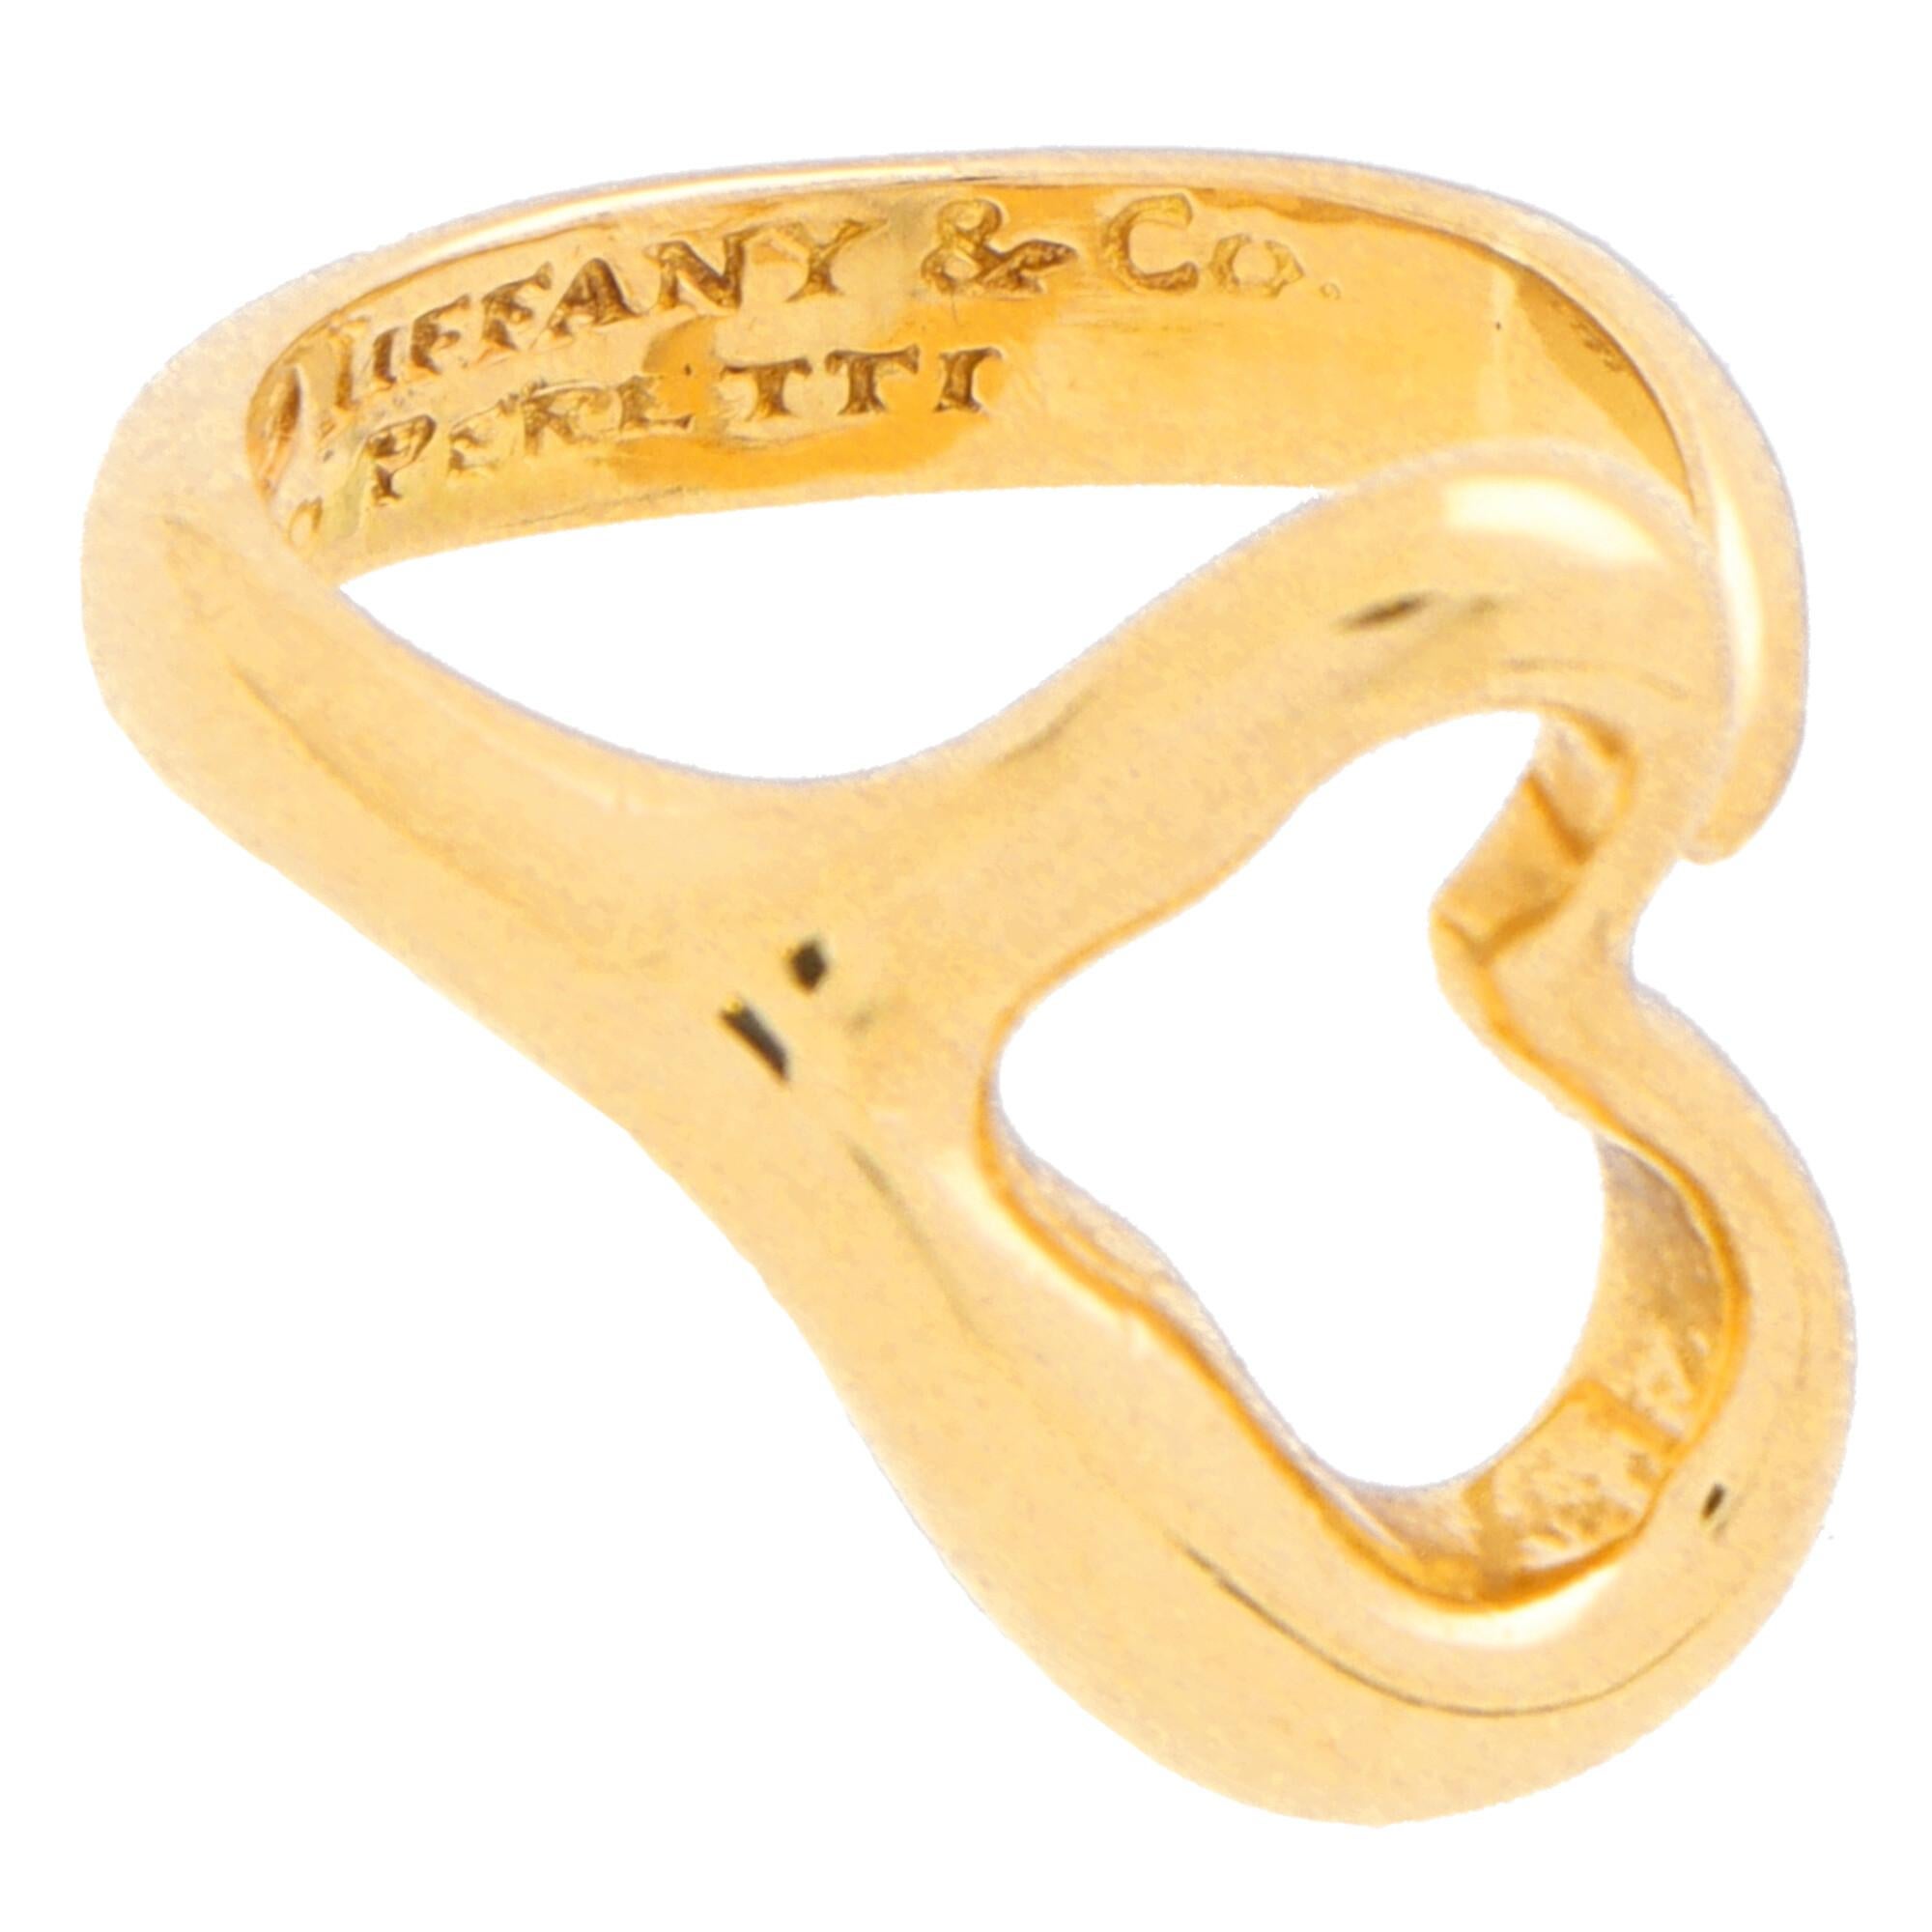 Elsa Peretti für Tiffany & Co. Offener Herzring aus 18 Karat Gelbgold